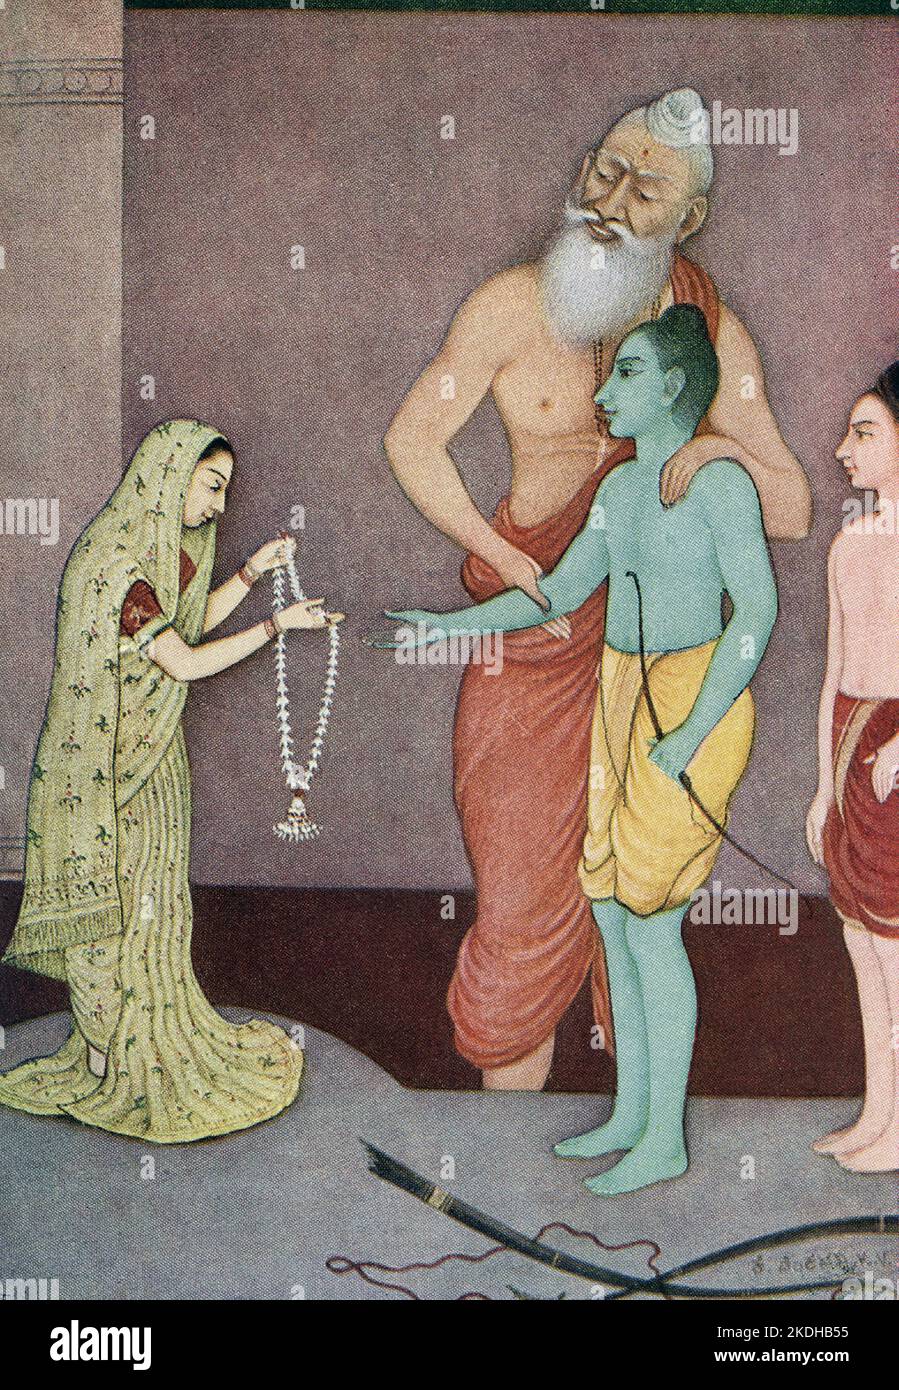 Este estampado muestra las fechas del matrimonio de Rama en 1913. Según el Ramayana, el Señor Shiva había regalado un arco celestial al rey Janaka de Mithila. El rey Janaka estableció la condición de que se casaría con su hija Sita con la persona que sería capaz de encadenar Pinaka, el arco del señor Shiva. En la asamblea de la corte del rey Janaka, Rama levantó sin esfuerzo el arco y lo sujetó, y luego, estirando el arco para examinar su agudeza, Rama rompió involuntariamente el arco, el sonido de su ruptura resonó como el trueno y la tierra tembló. Foto de stock